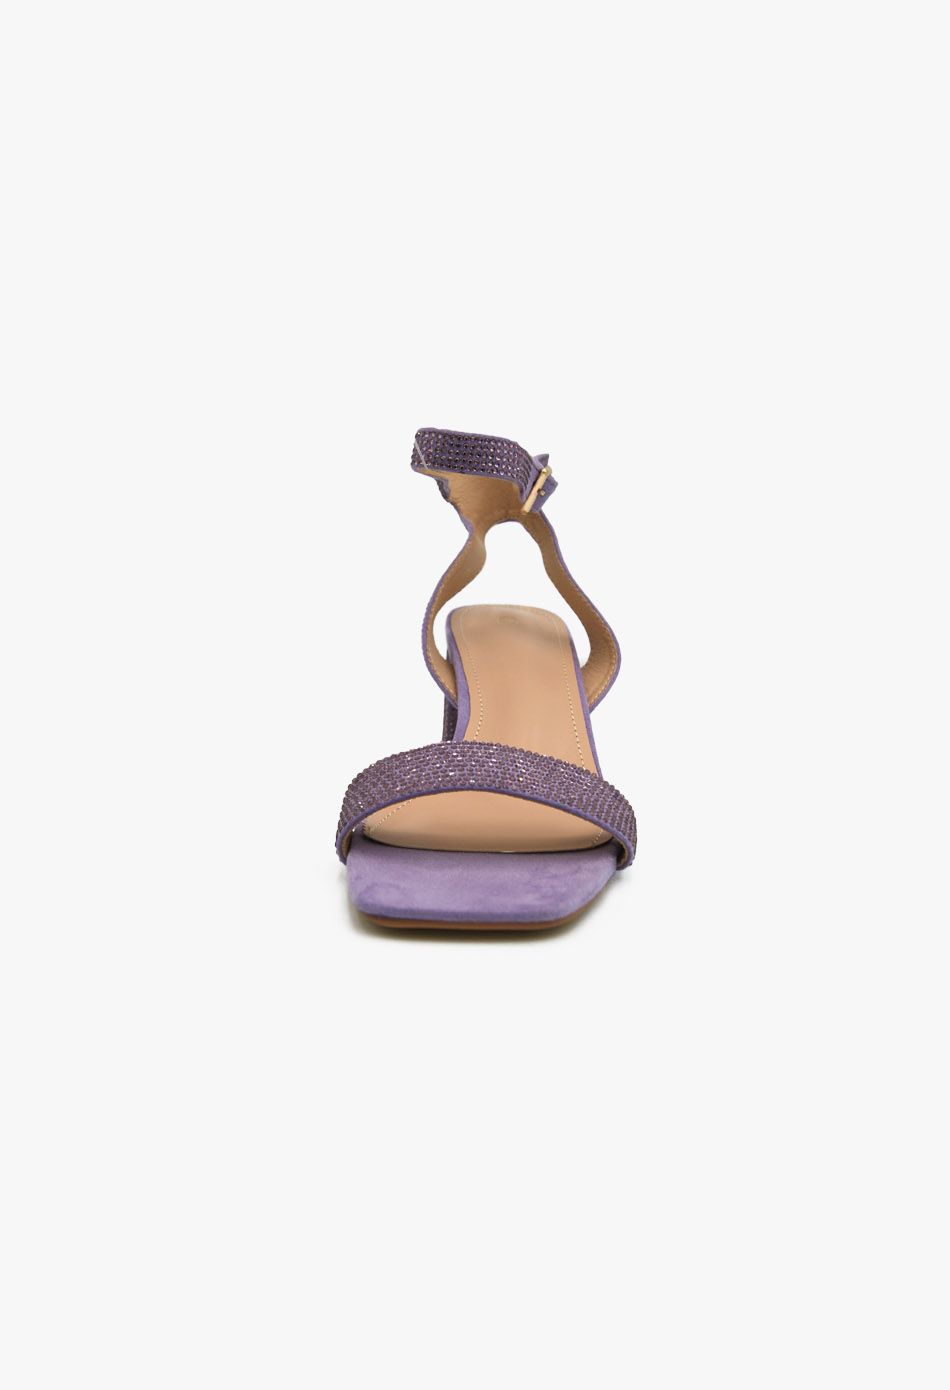 Γυναικεία Πέδιλα με Στρασ και Χοντρό Χαμηλό Τακούνι Λίλα / F1606-purple Ανοιχτά Παπούτσια joya.gr